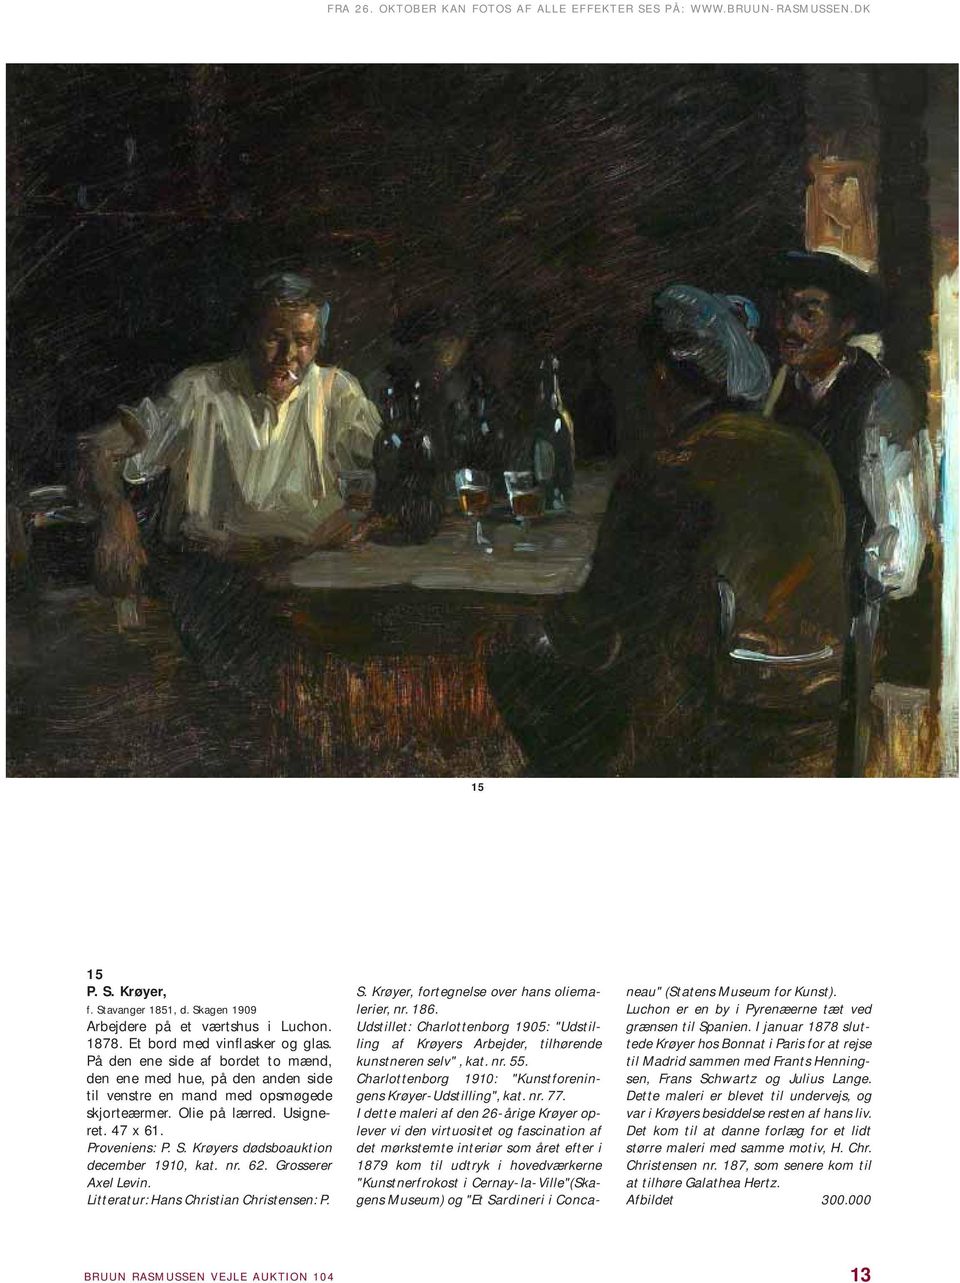 Krøyers dødsboauktion december 1910, kat. nr. 62. Grosserer Axel Levin. Litteratur: Hans Christian Christensen: P. S. Krøyer, fortegnelse over hans oliemalerier, nr. 186.